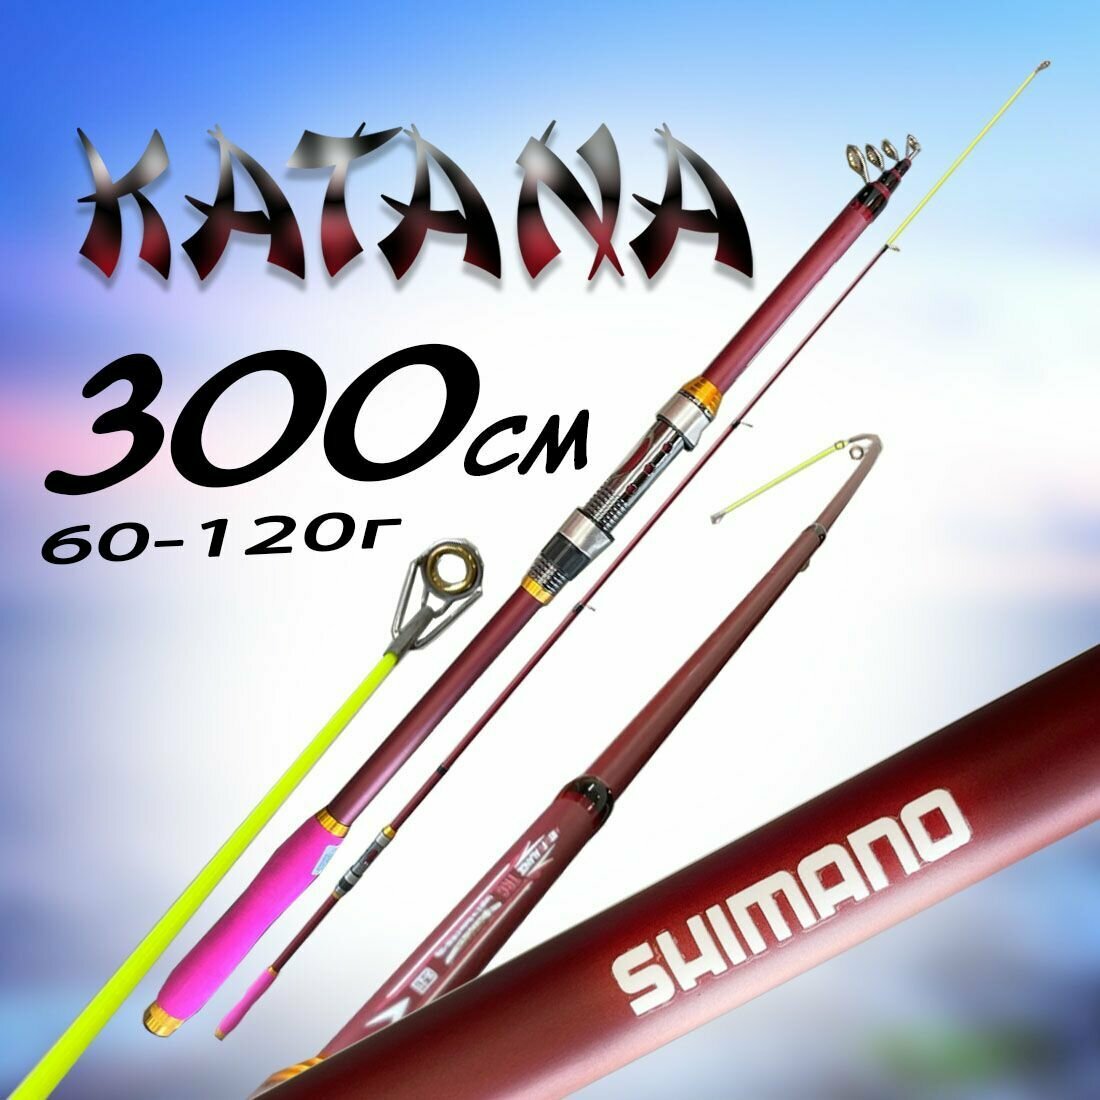 Удилище для рыбалки Шимано Катана 300см 60-120г Средне-быстрый строй